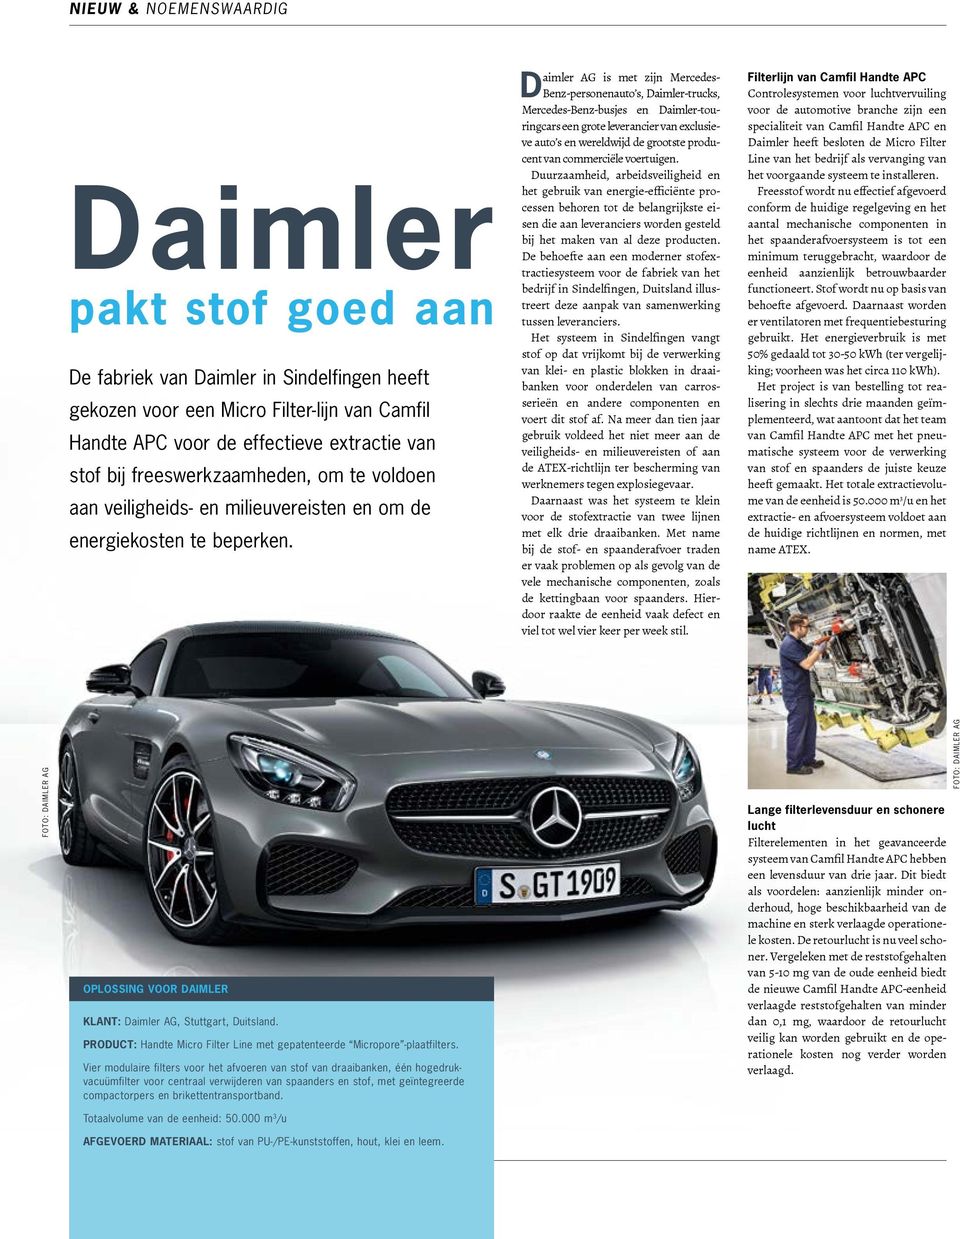 aimler AG is met zijn Mercedes- DBenz-personenauto s, Daimler-trucks, Mercedes-Benz-busjes en Daimler-touringcars een grote leverancier van exclusieve auto s en wereldwijd de grootste producent van